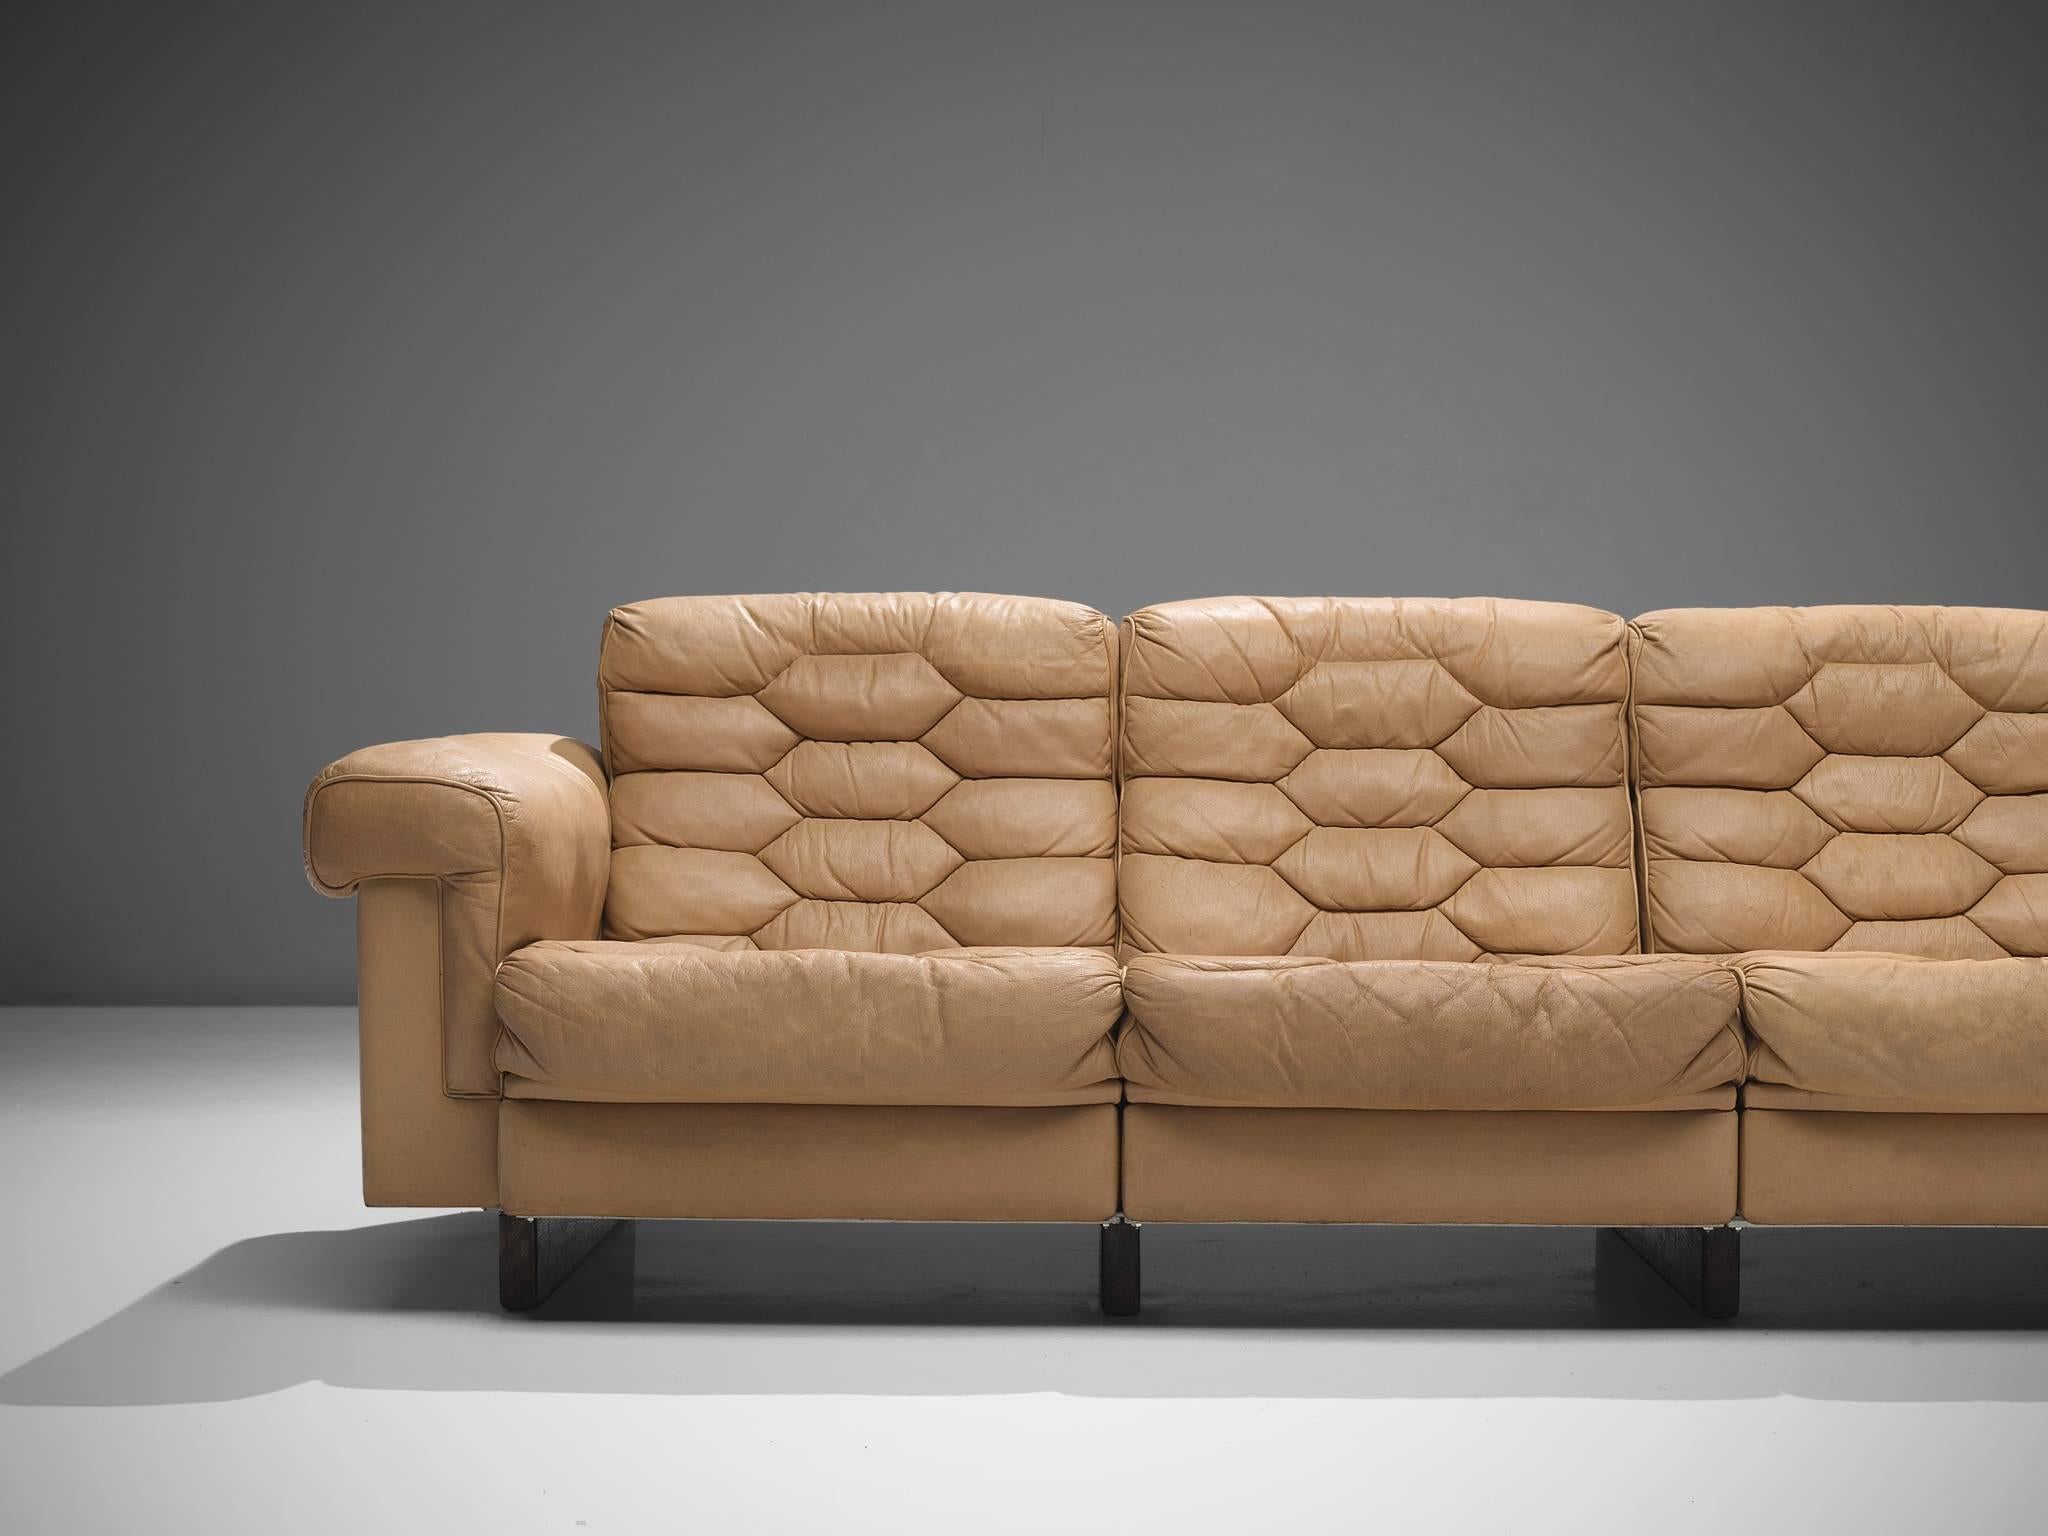 Swiss De Sede Four-Seat Leather Cognac Sofa